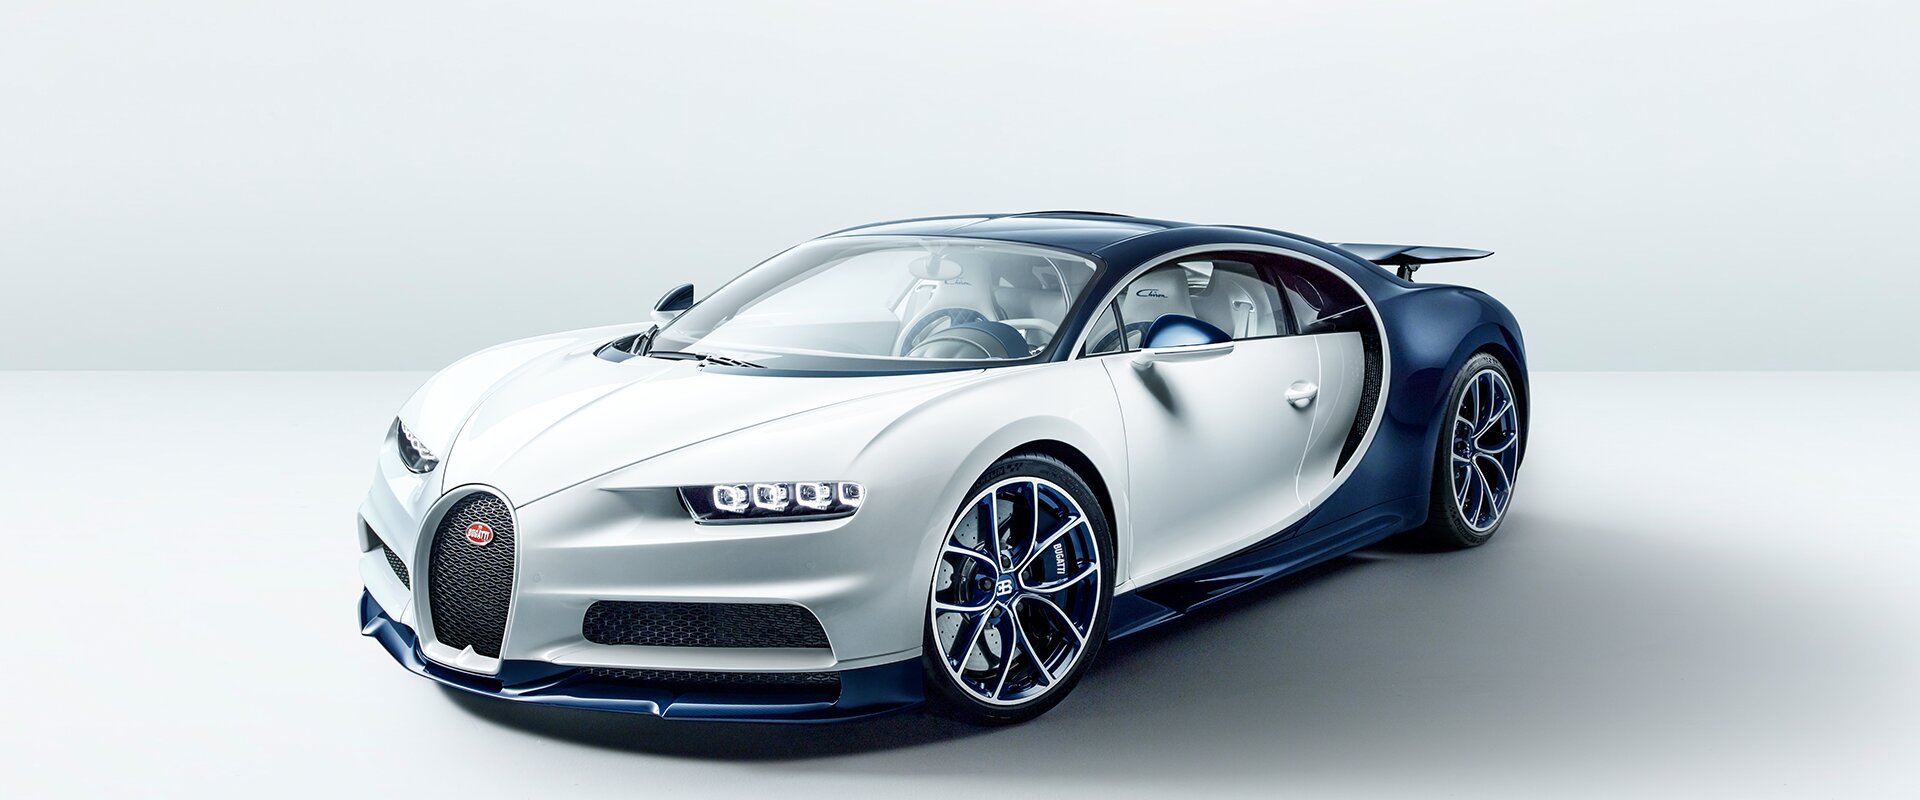 La Bugatti Chiron élue voiture la plus rapide en 2016.